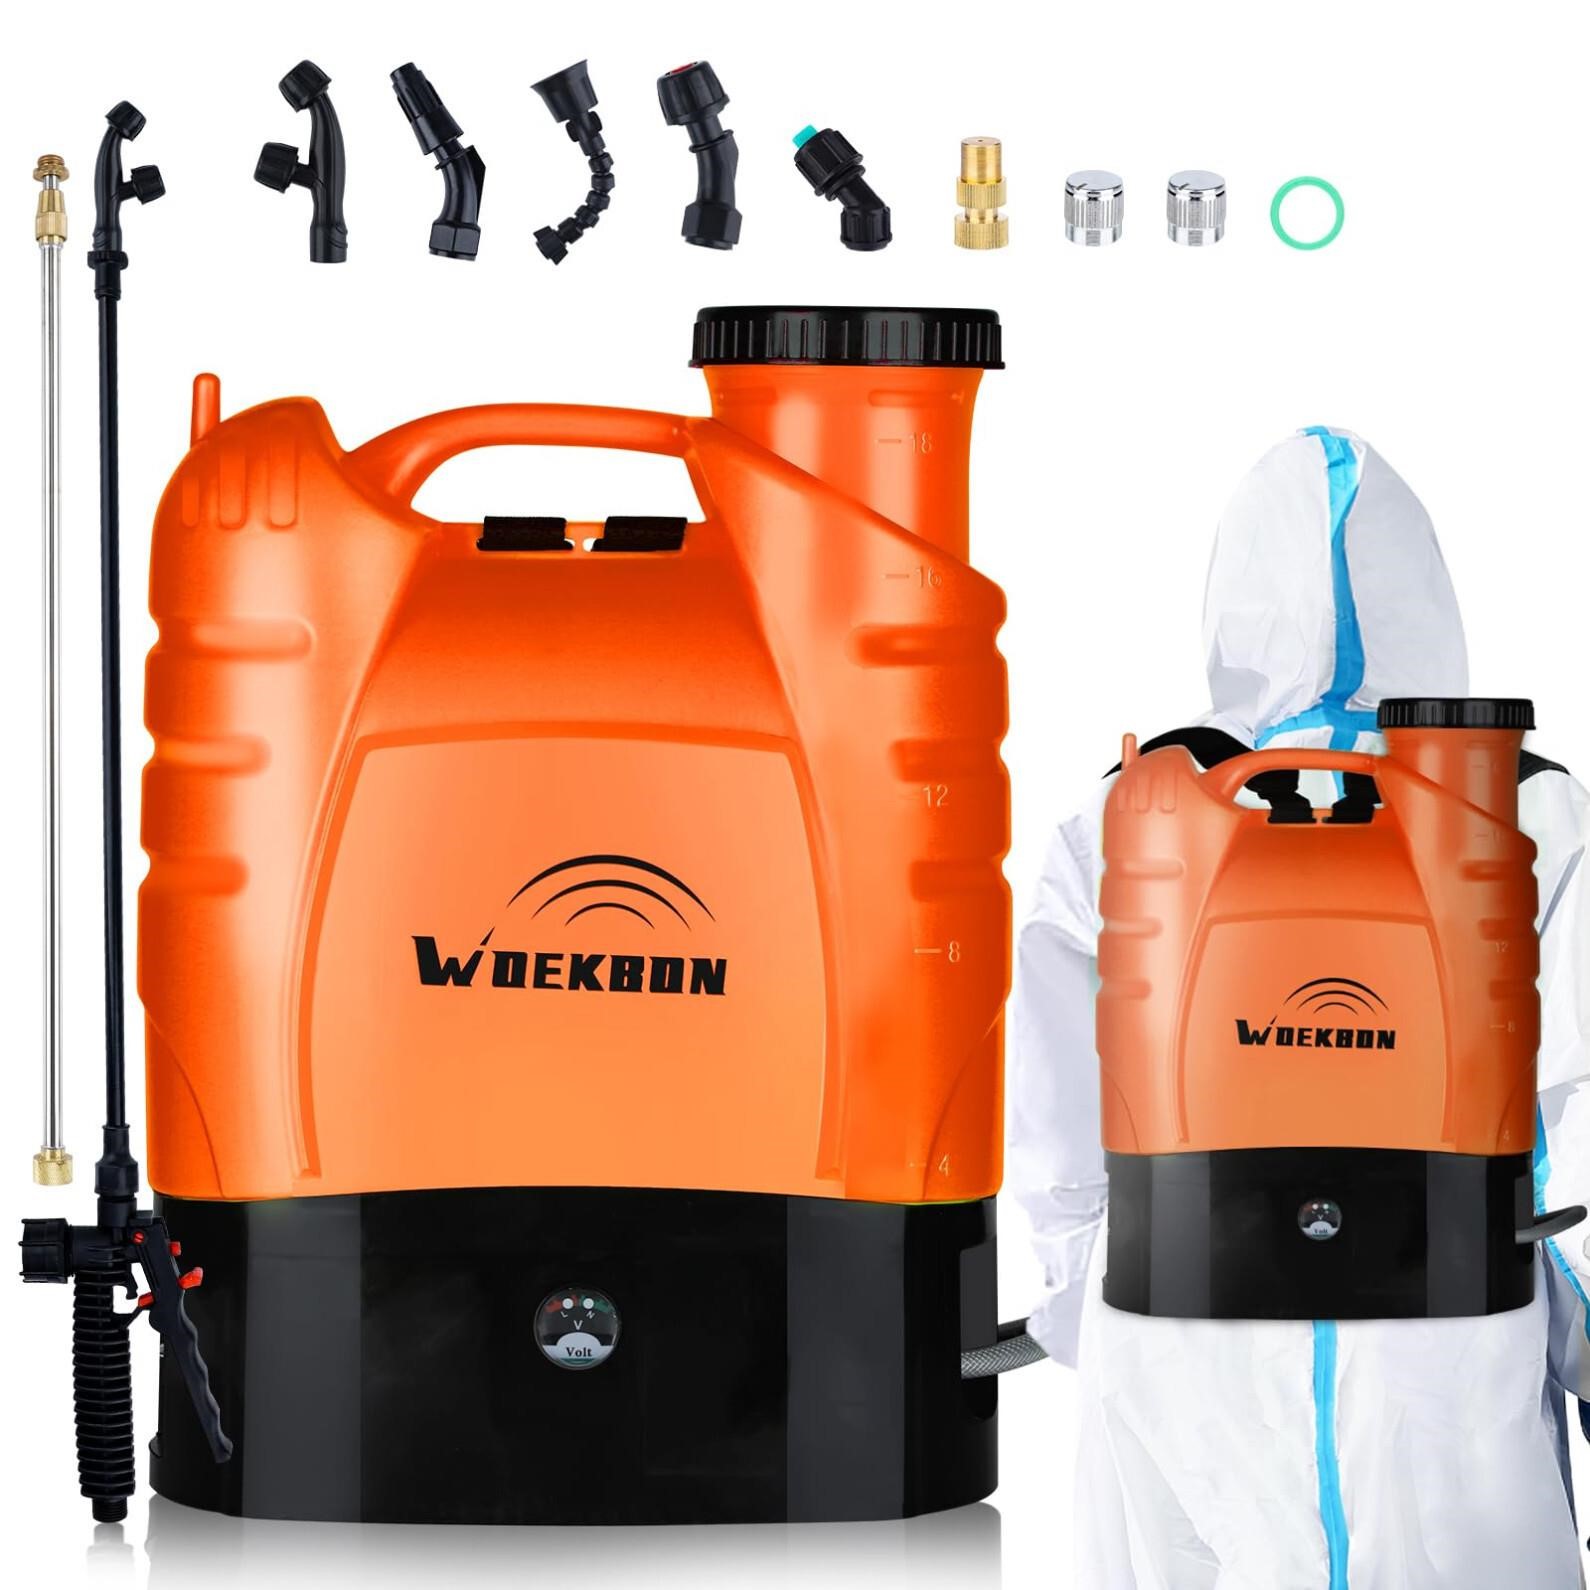 *WOEKBON 4 Gallon Battery Powered Backpack Sprayer